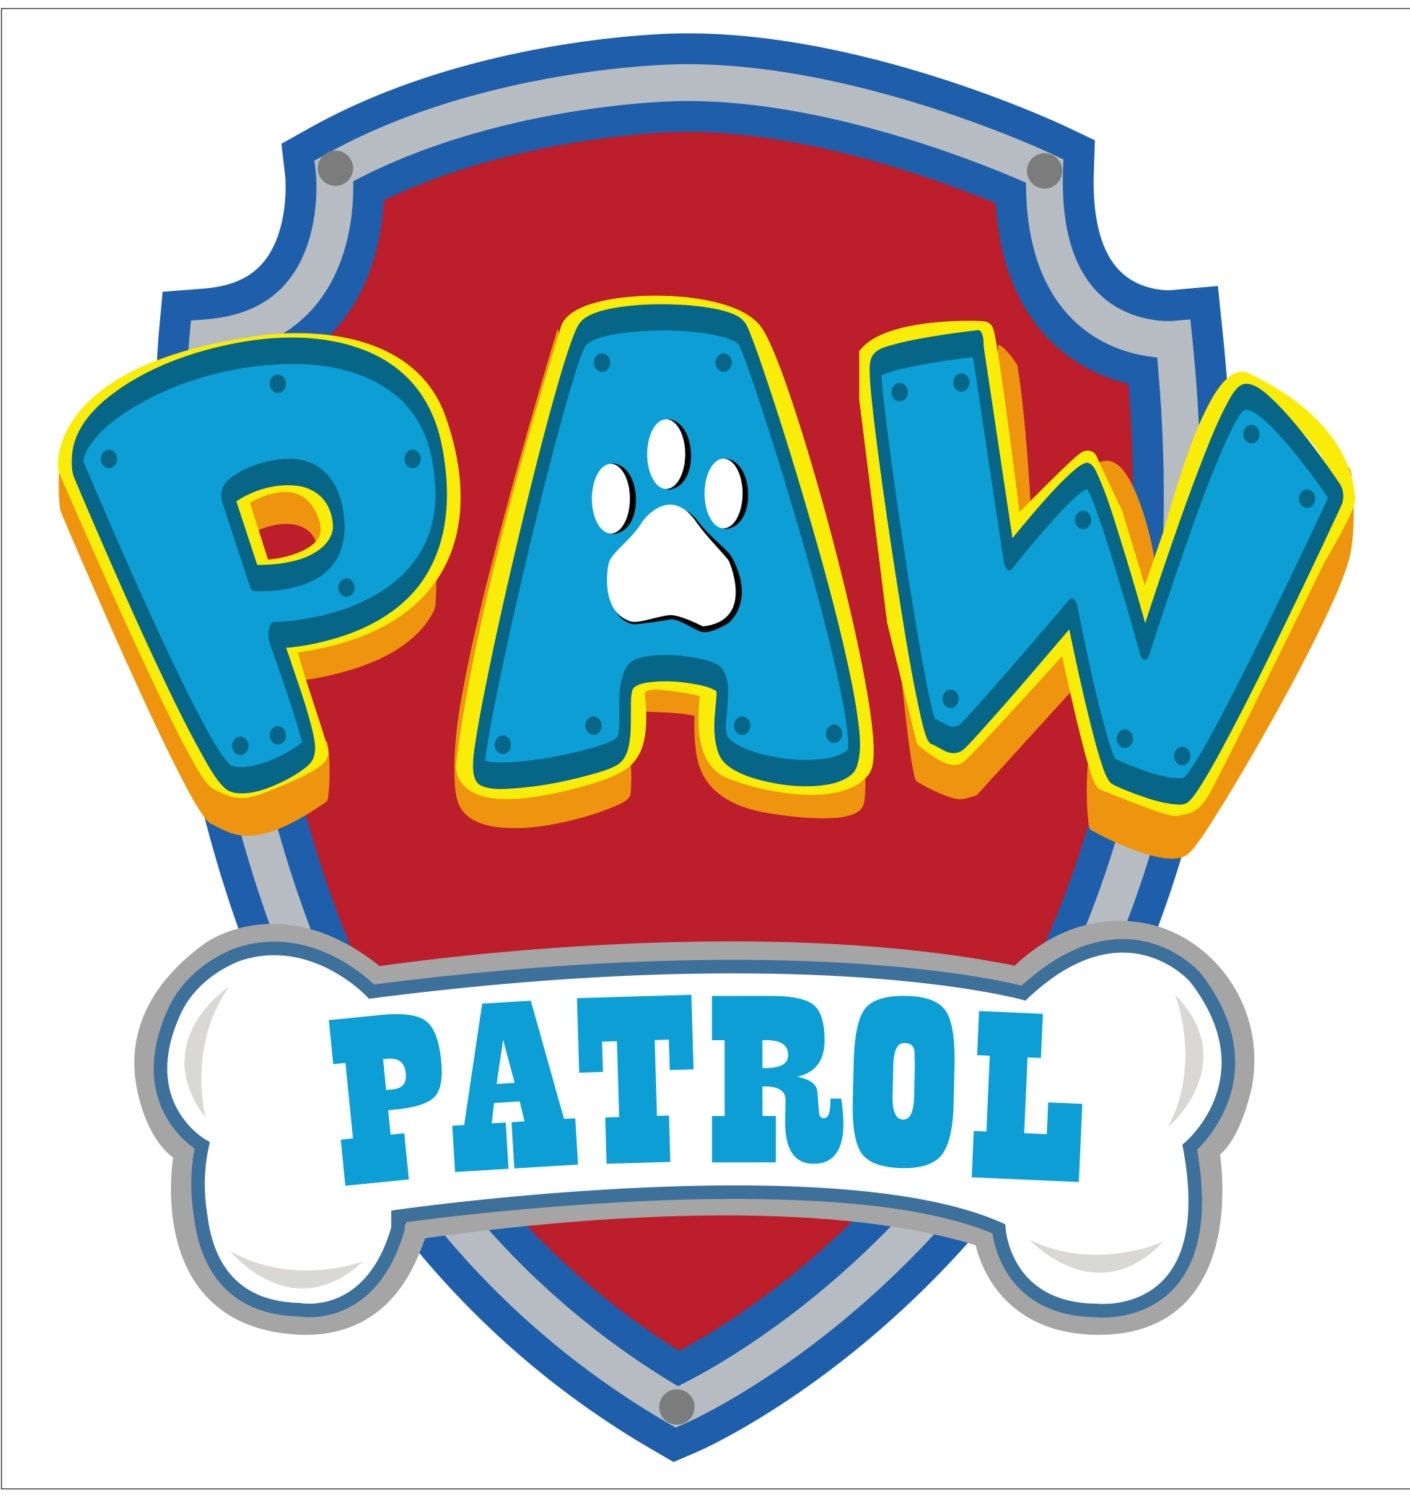 Download Paw Patrol SVG Vector logo digital download DxF SVG EPS.